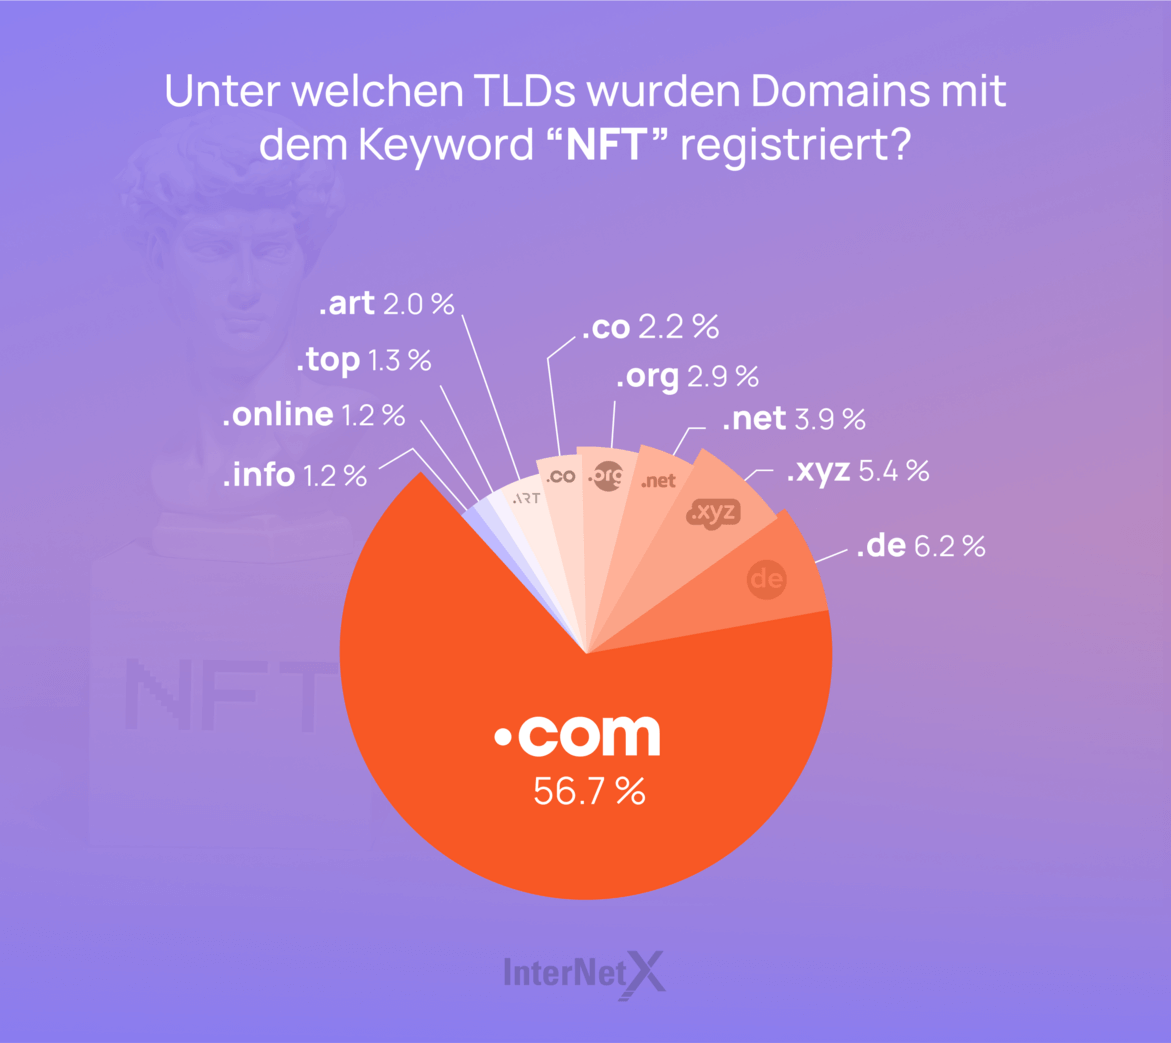 Kreisdiagramm mit TLDs mit Keyword NFT. .com hat den größten Anteil von 56,7 %